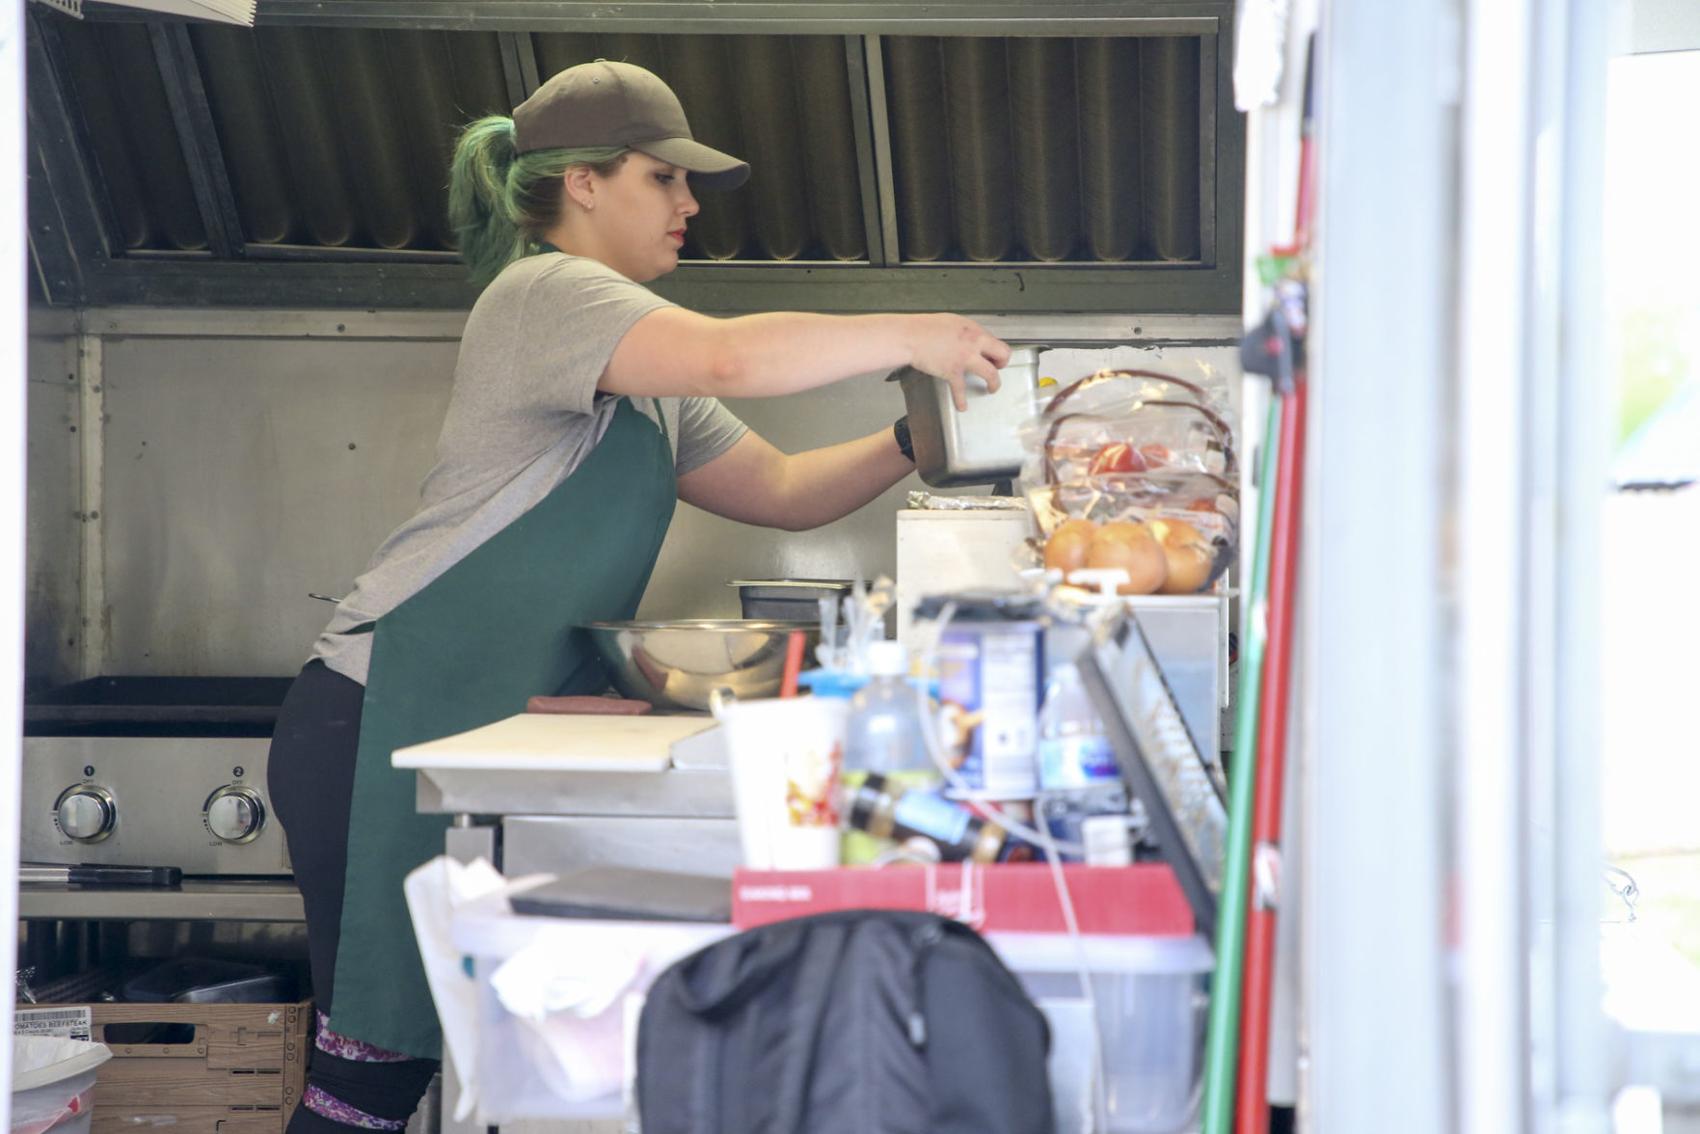 Altered Lives: Food truck owner Megan Brister